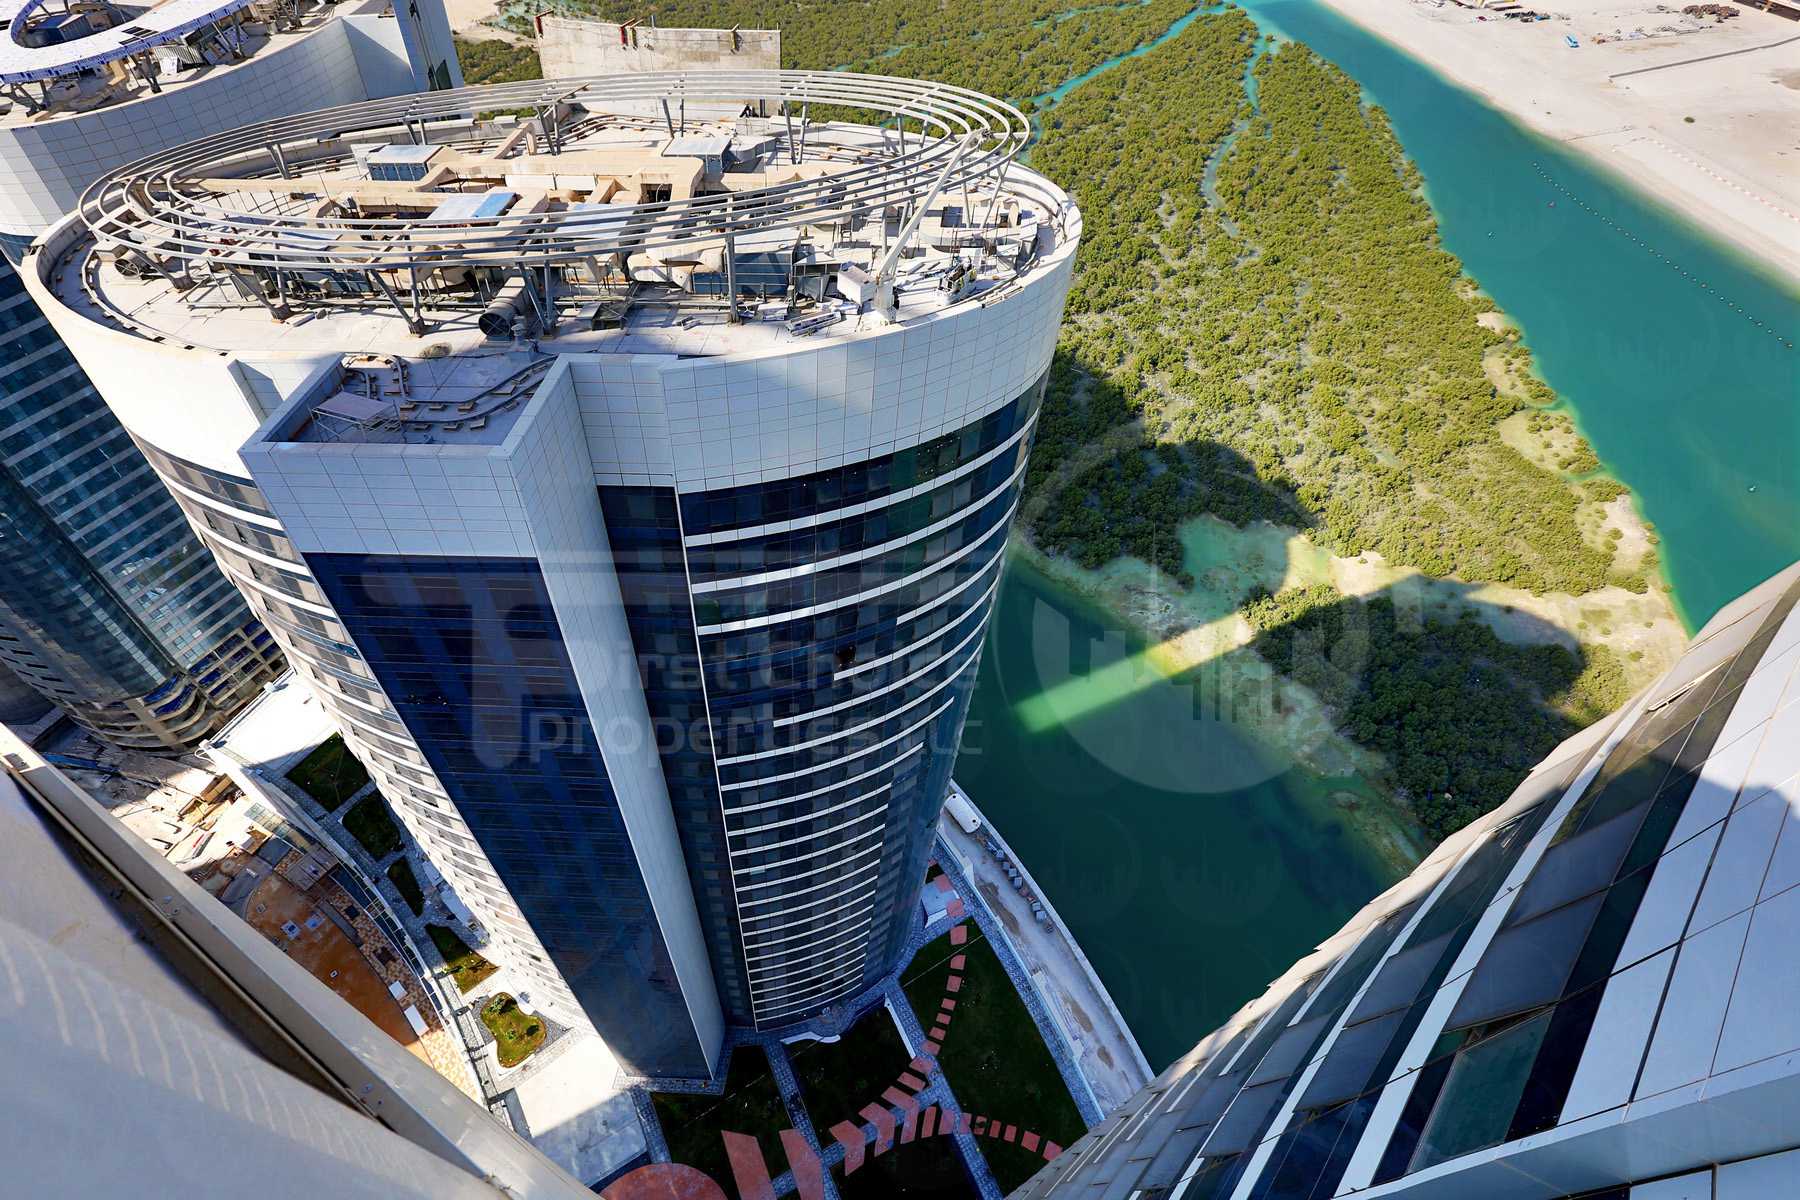 Studio - 1BR - 2BR - 3BR - 4BR Apartment - Abu Dhabi - UAE - Al Reem Island - Hydra Avenue - Outside View (41) - Copy.jpg